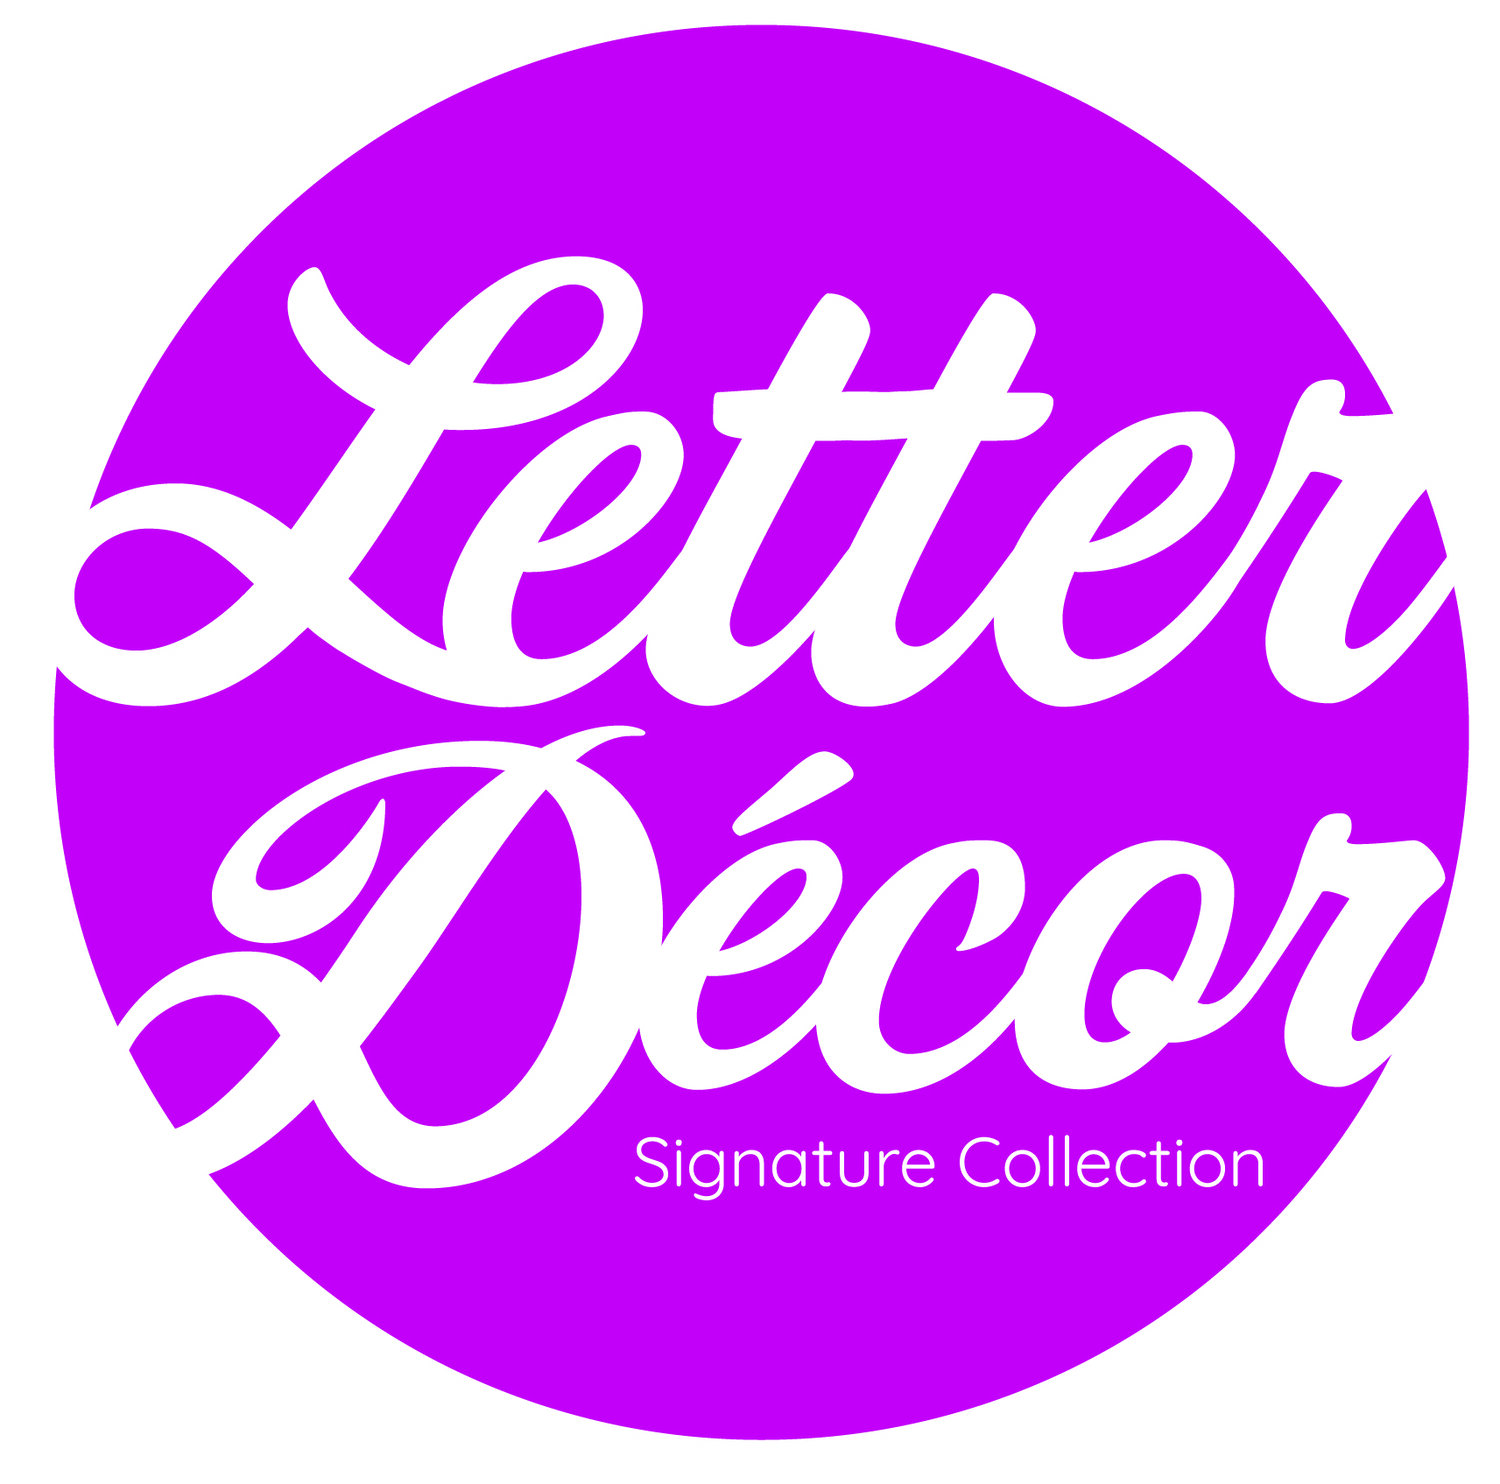 Letter Décor Signature Collection